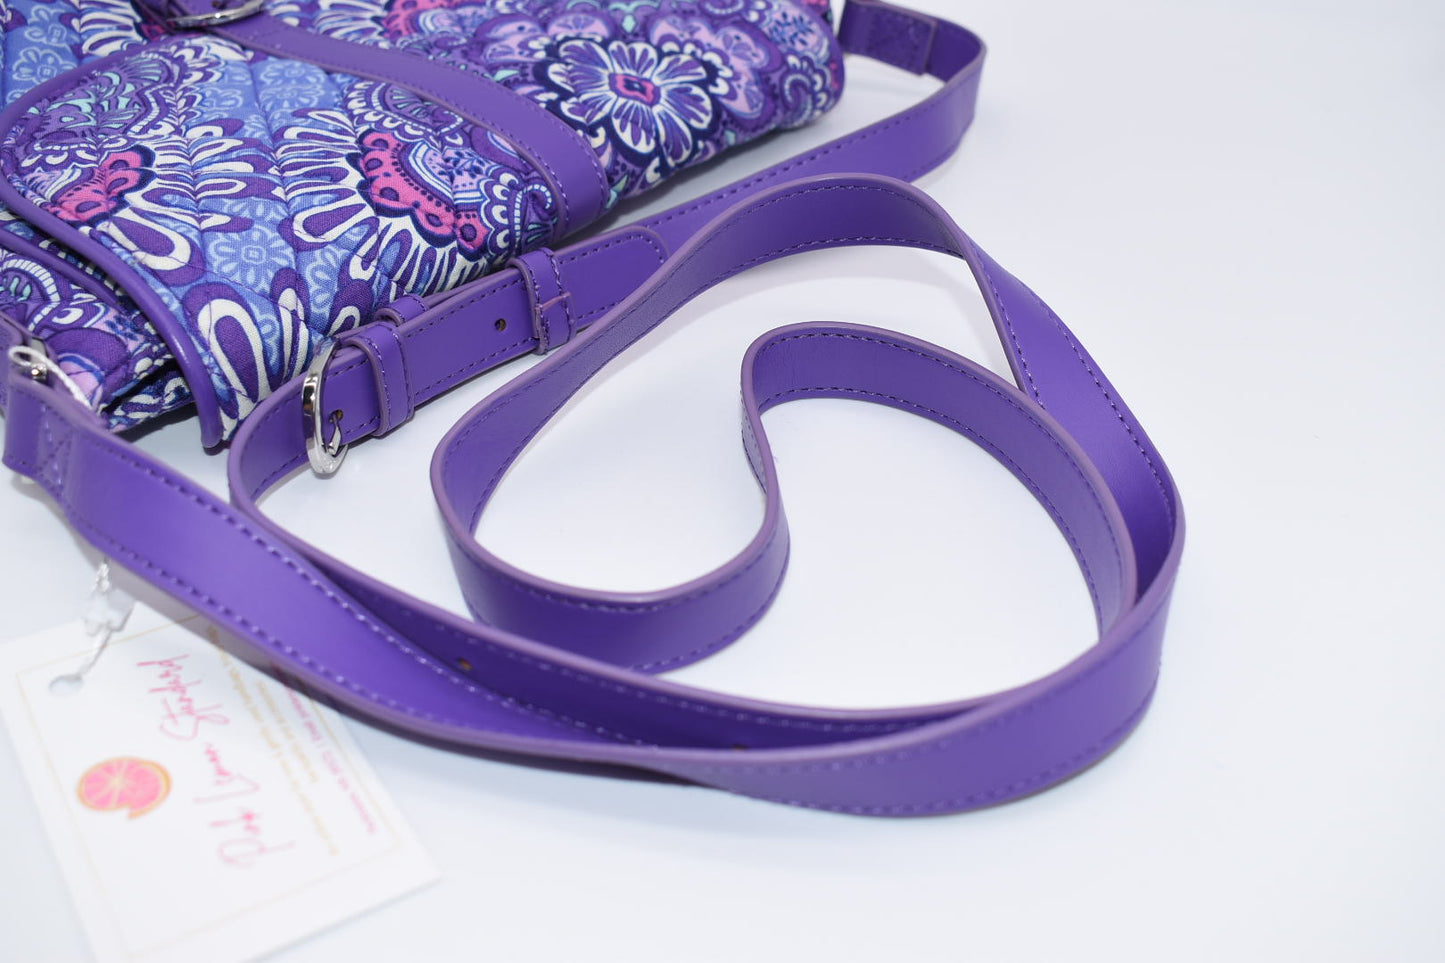 Vera Bradley "Lilac Tapestry" Slim Saddle Bag